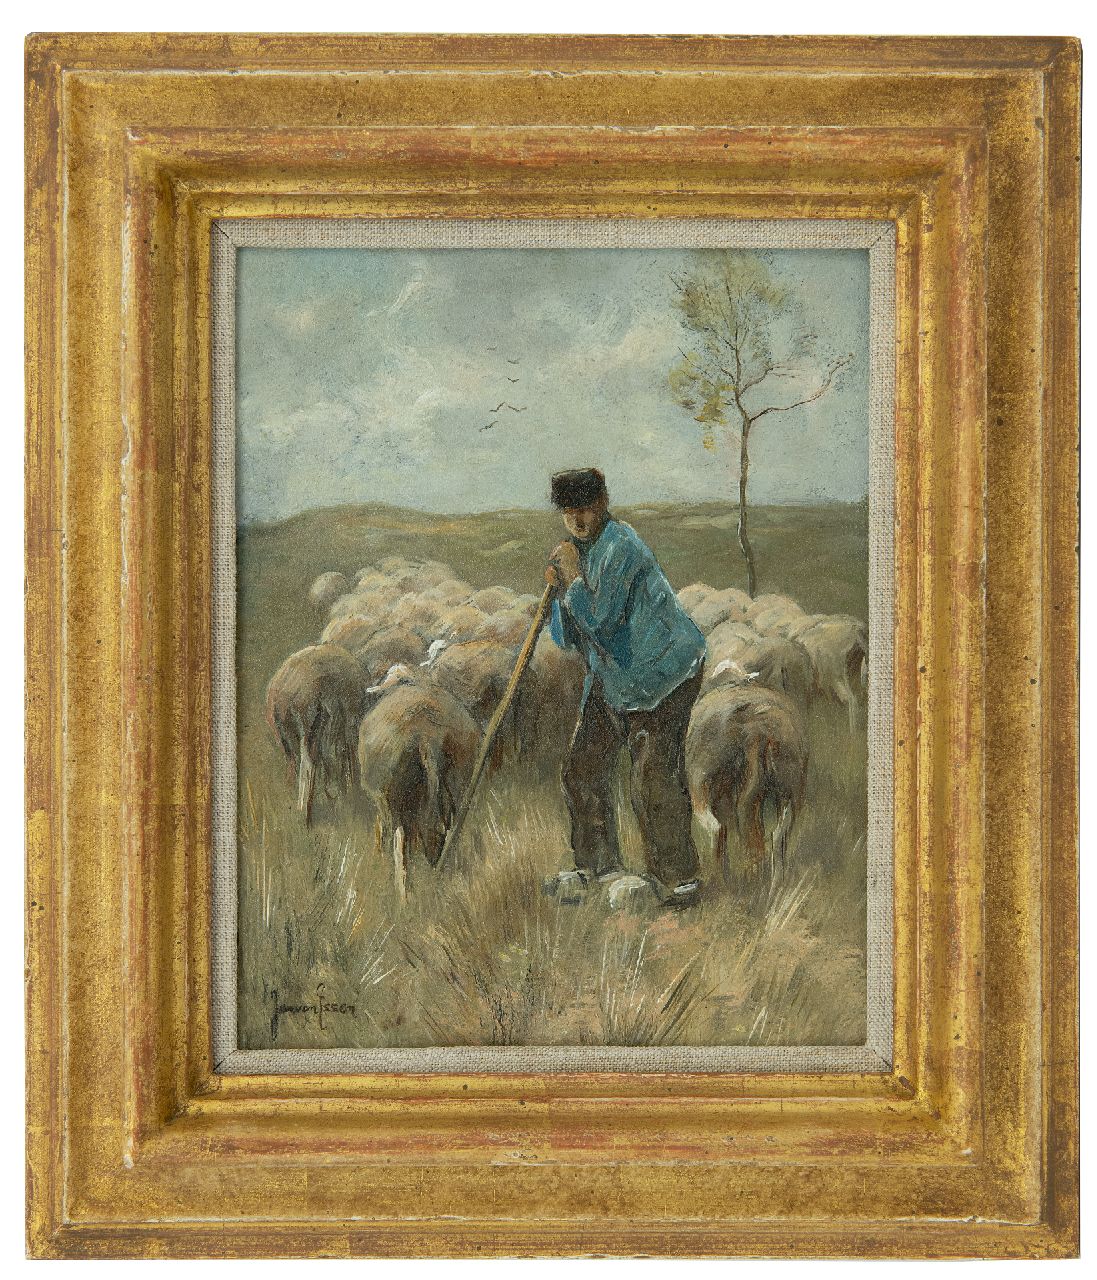 Essen J.C. van | Johannes Cornelis 'Jan' van Essen, Herder met schapen, olieverf op koper 20,0 x 16,0 cm, gesigneerd linksonder